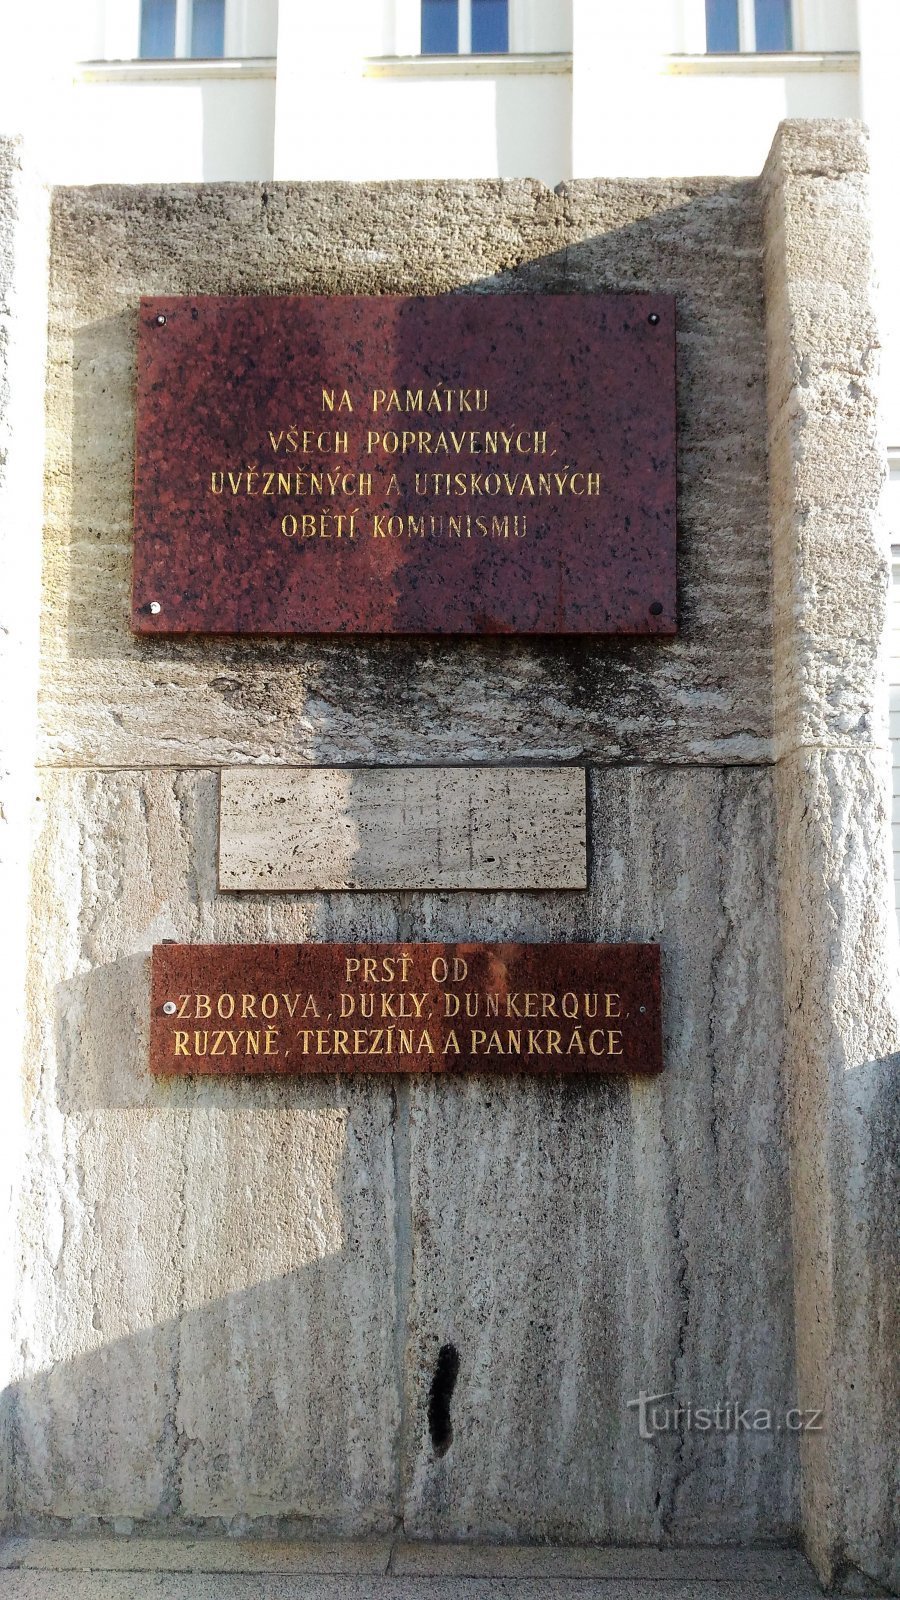 Monument sur l'escalier devant le bâtiment de la municipalité de Teplice